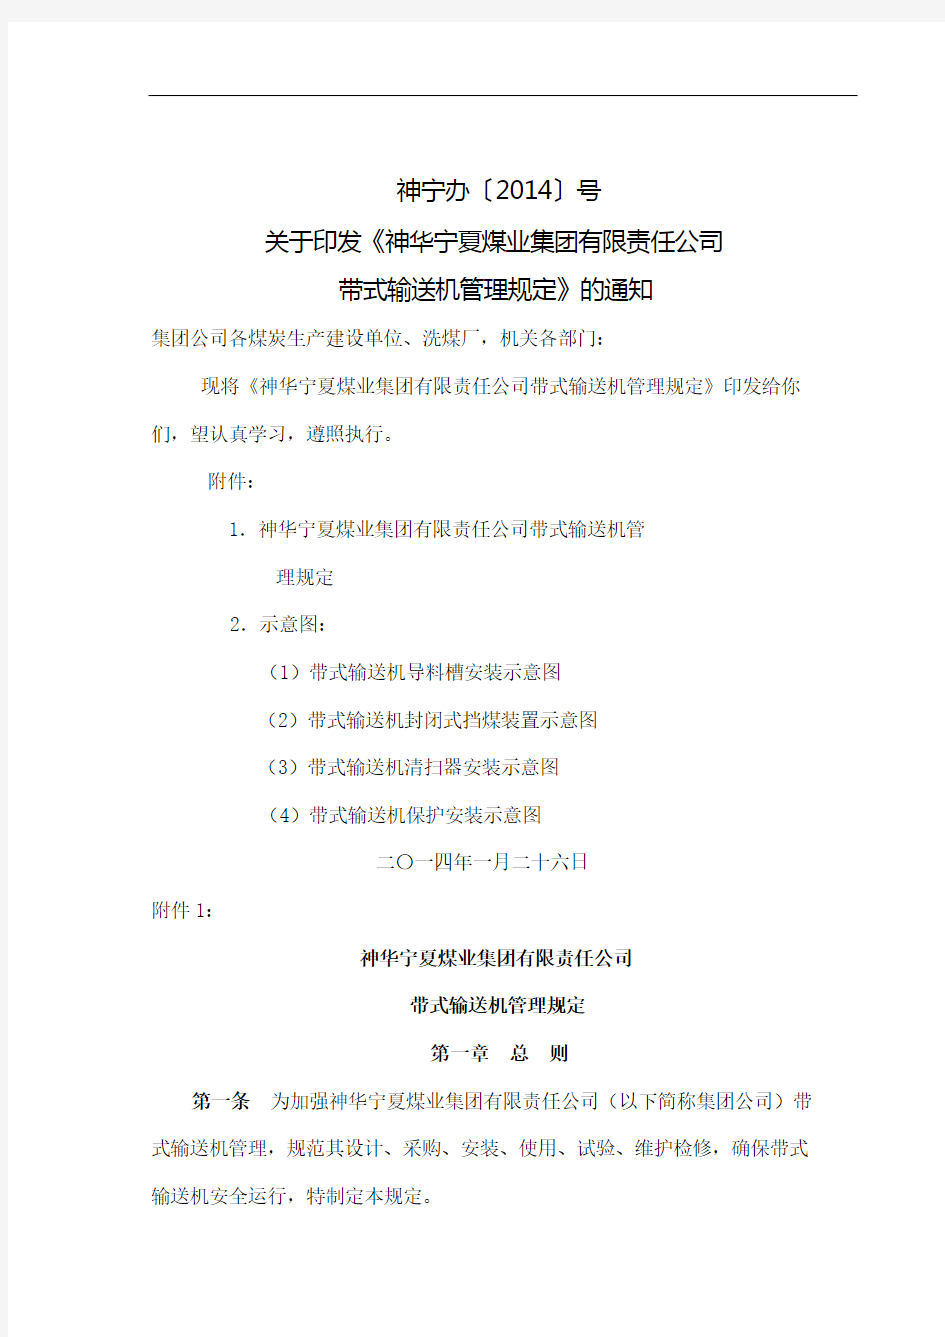 神华宁夏煤业集团带式输送机安全管理规定